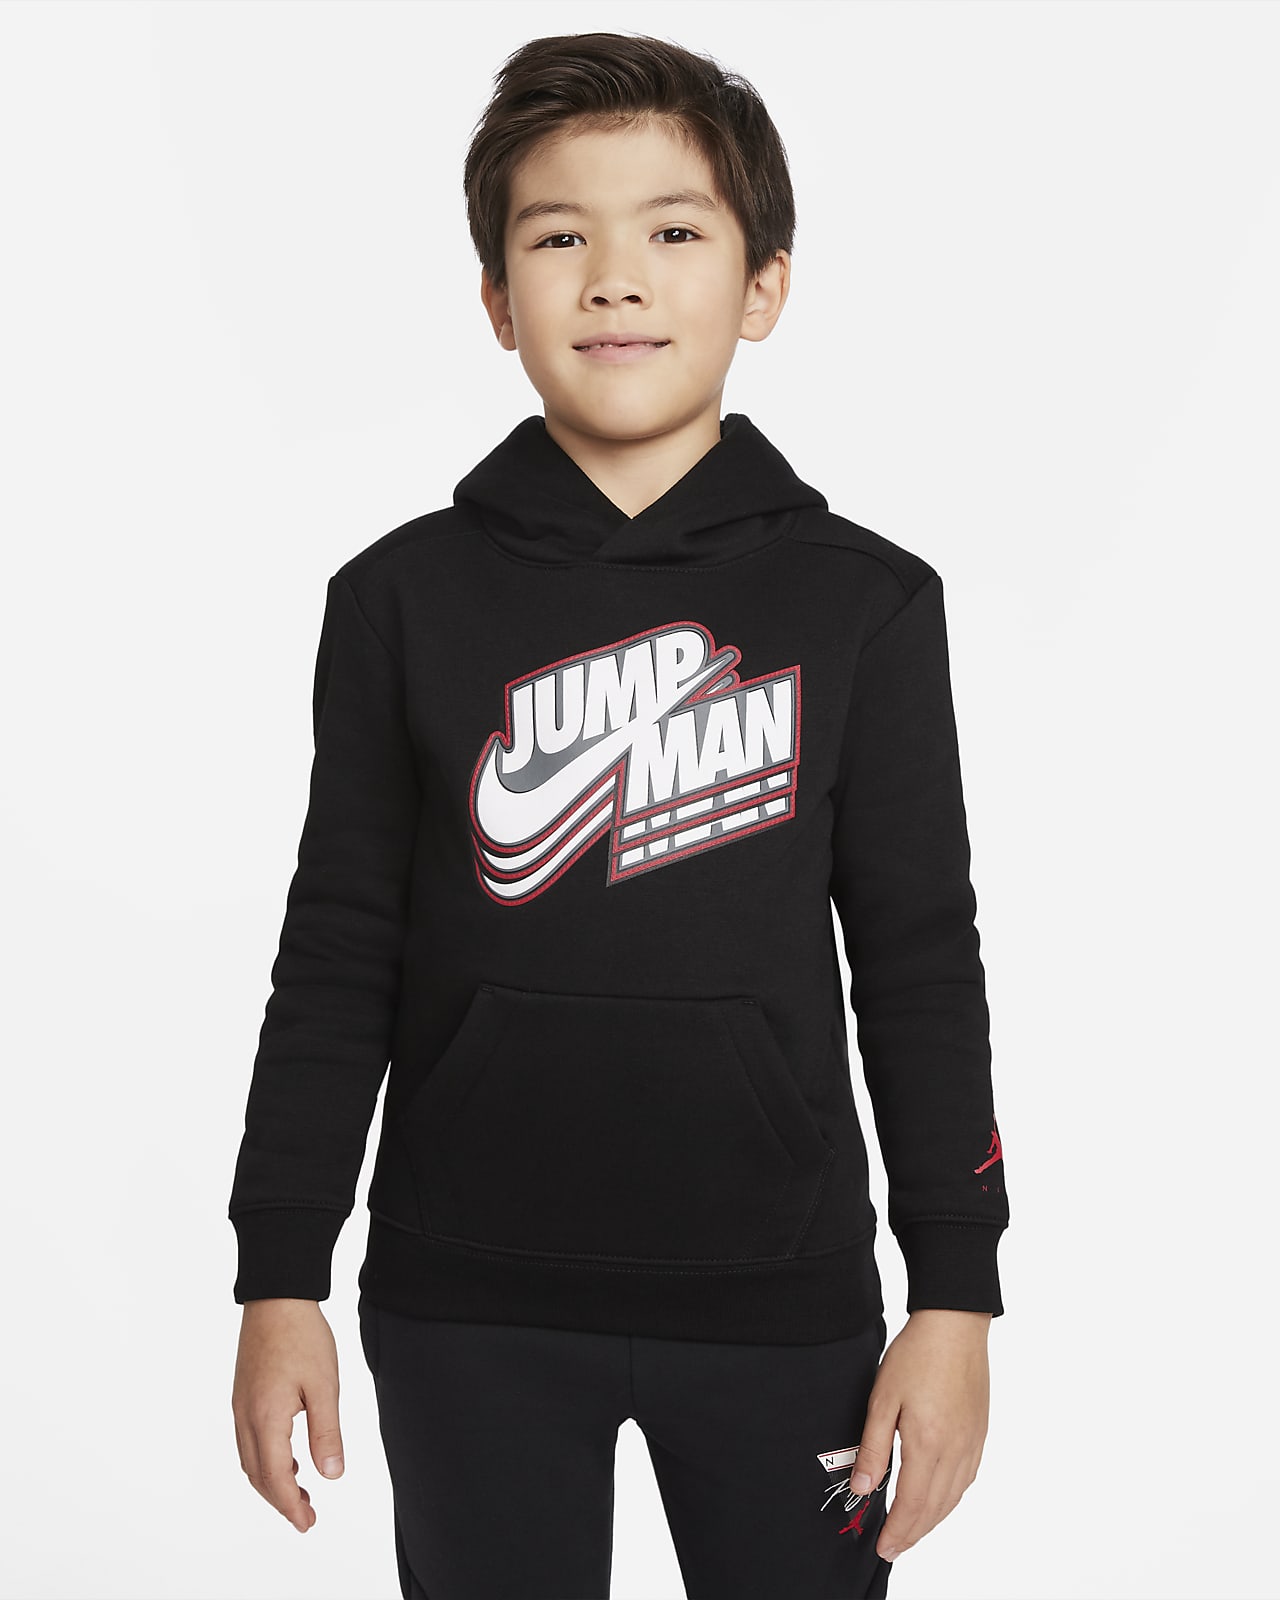 Jordan Sudadera con capucha - pequeño/a. Nike ES